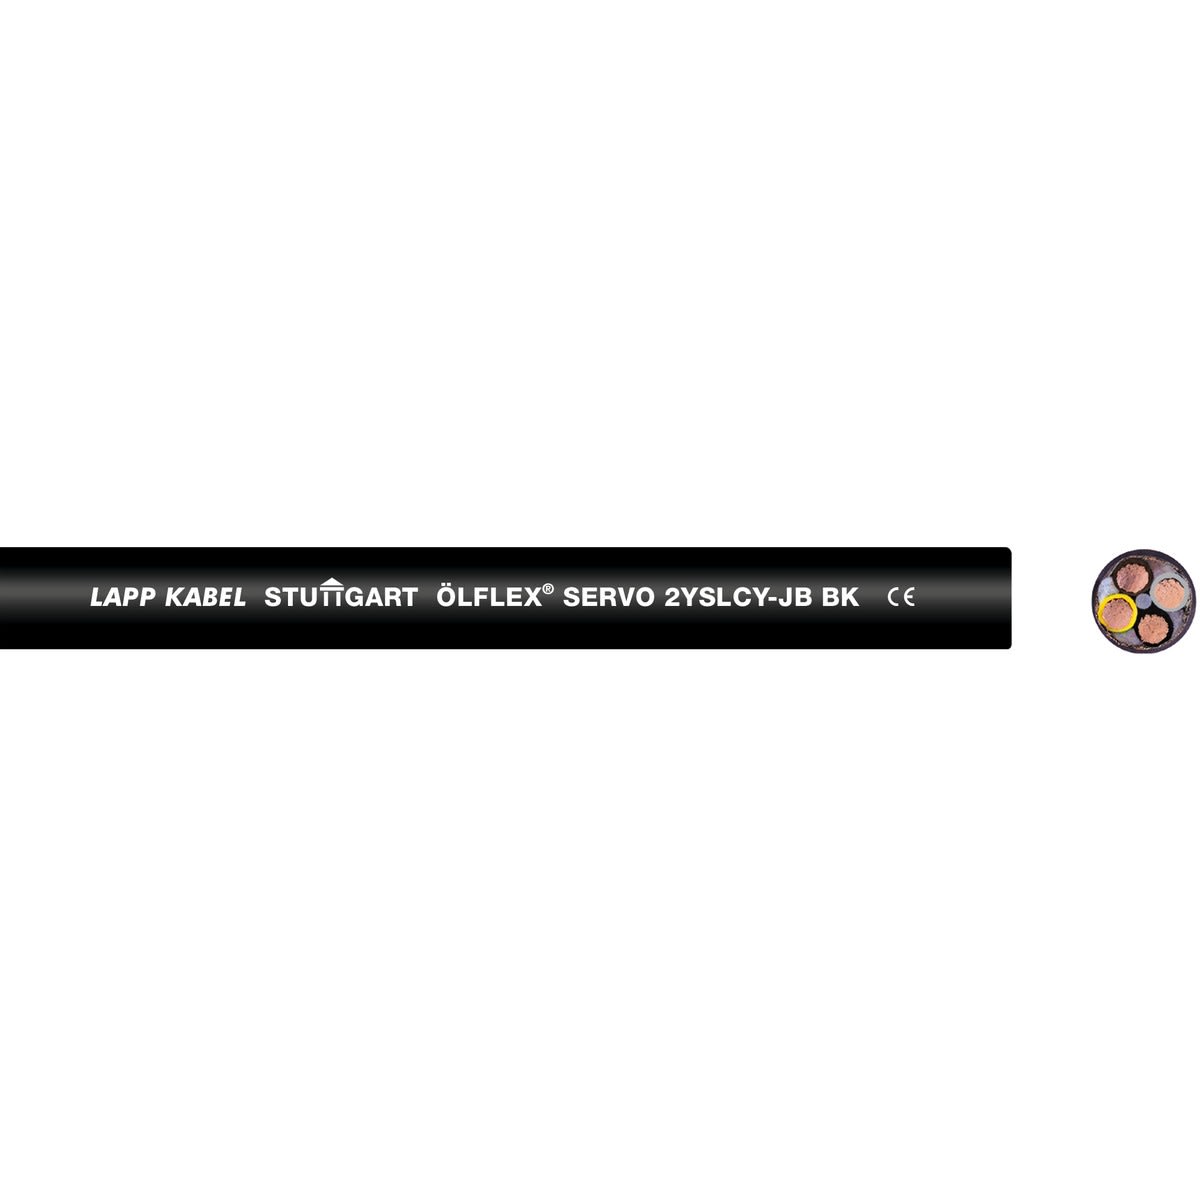 Lapp - ÖLFLEX SERVO 2YSLCY-JB BK 4G70